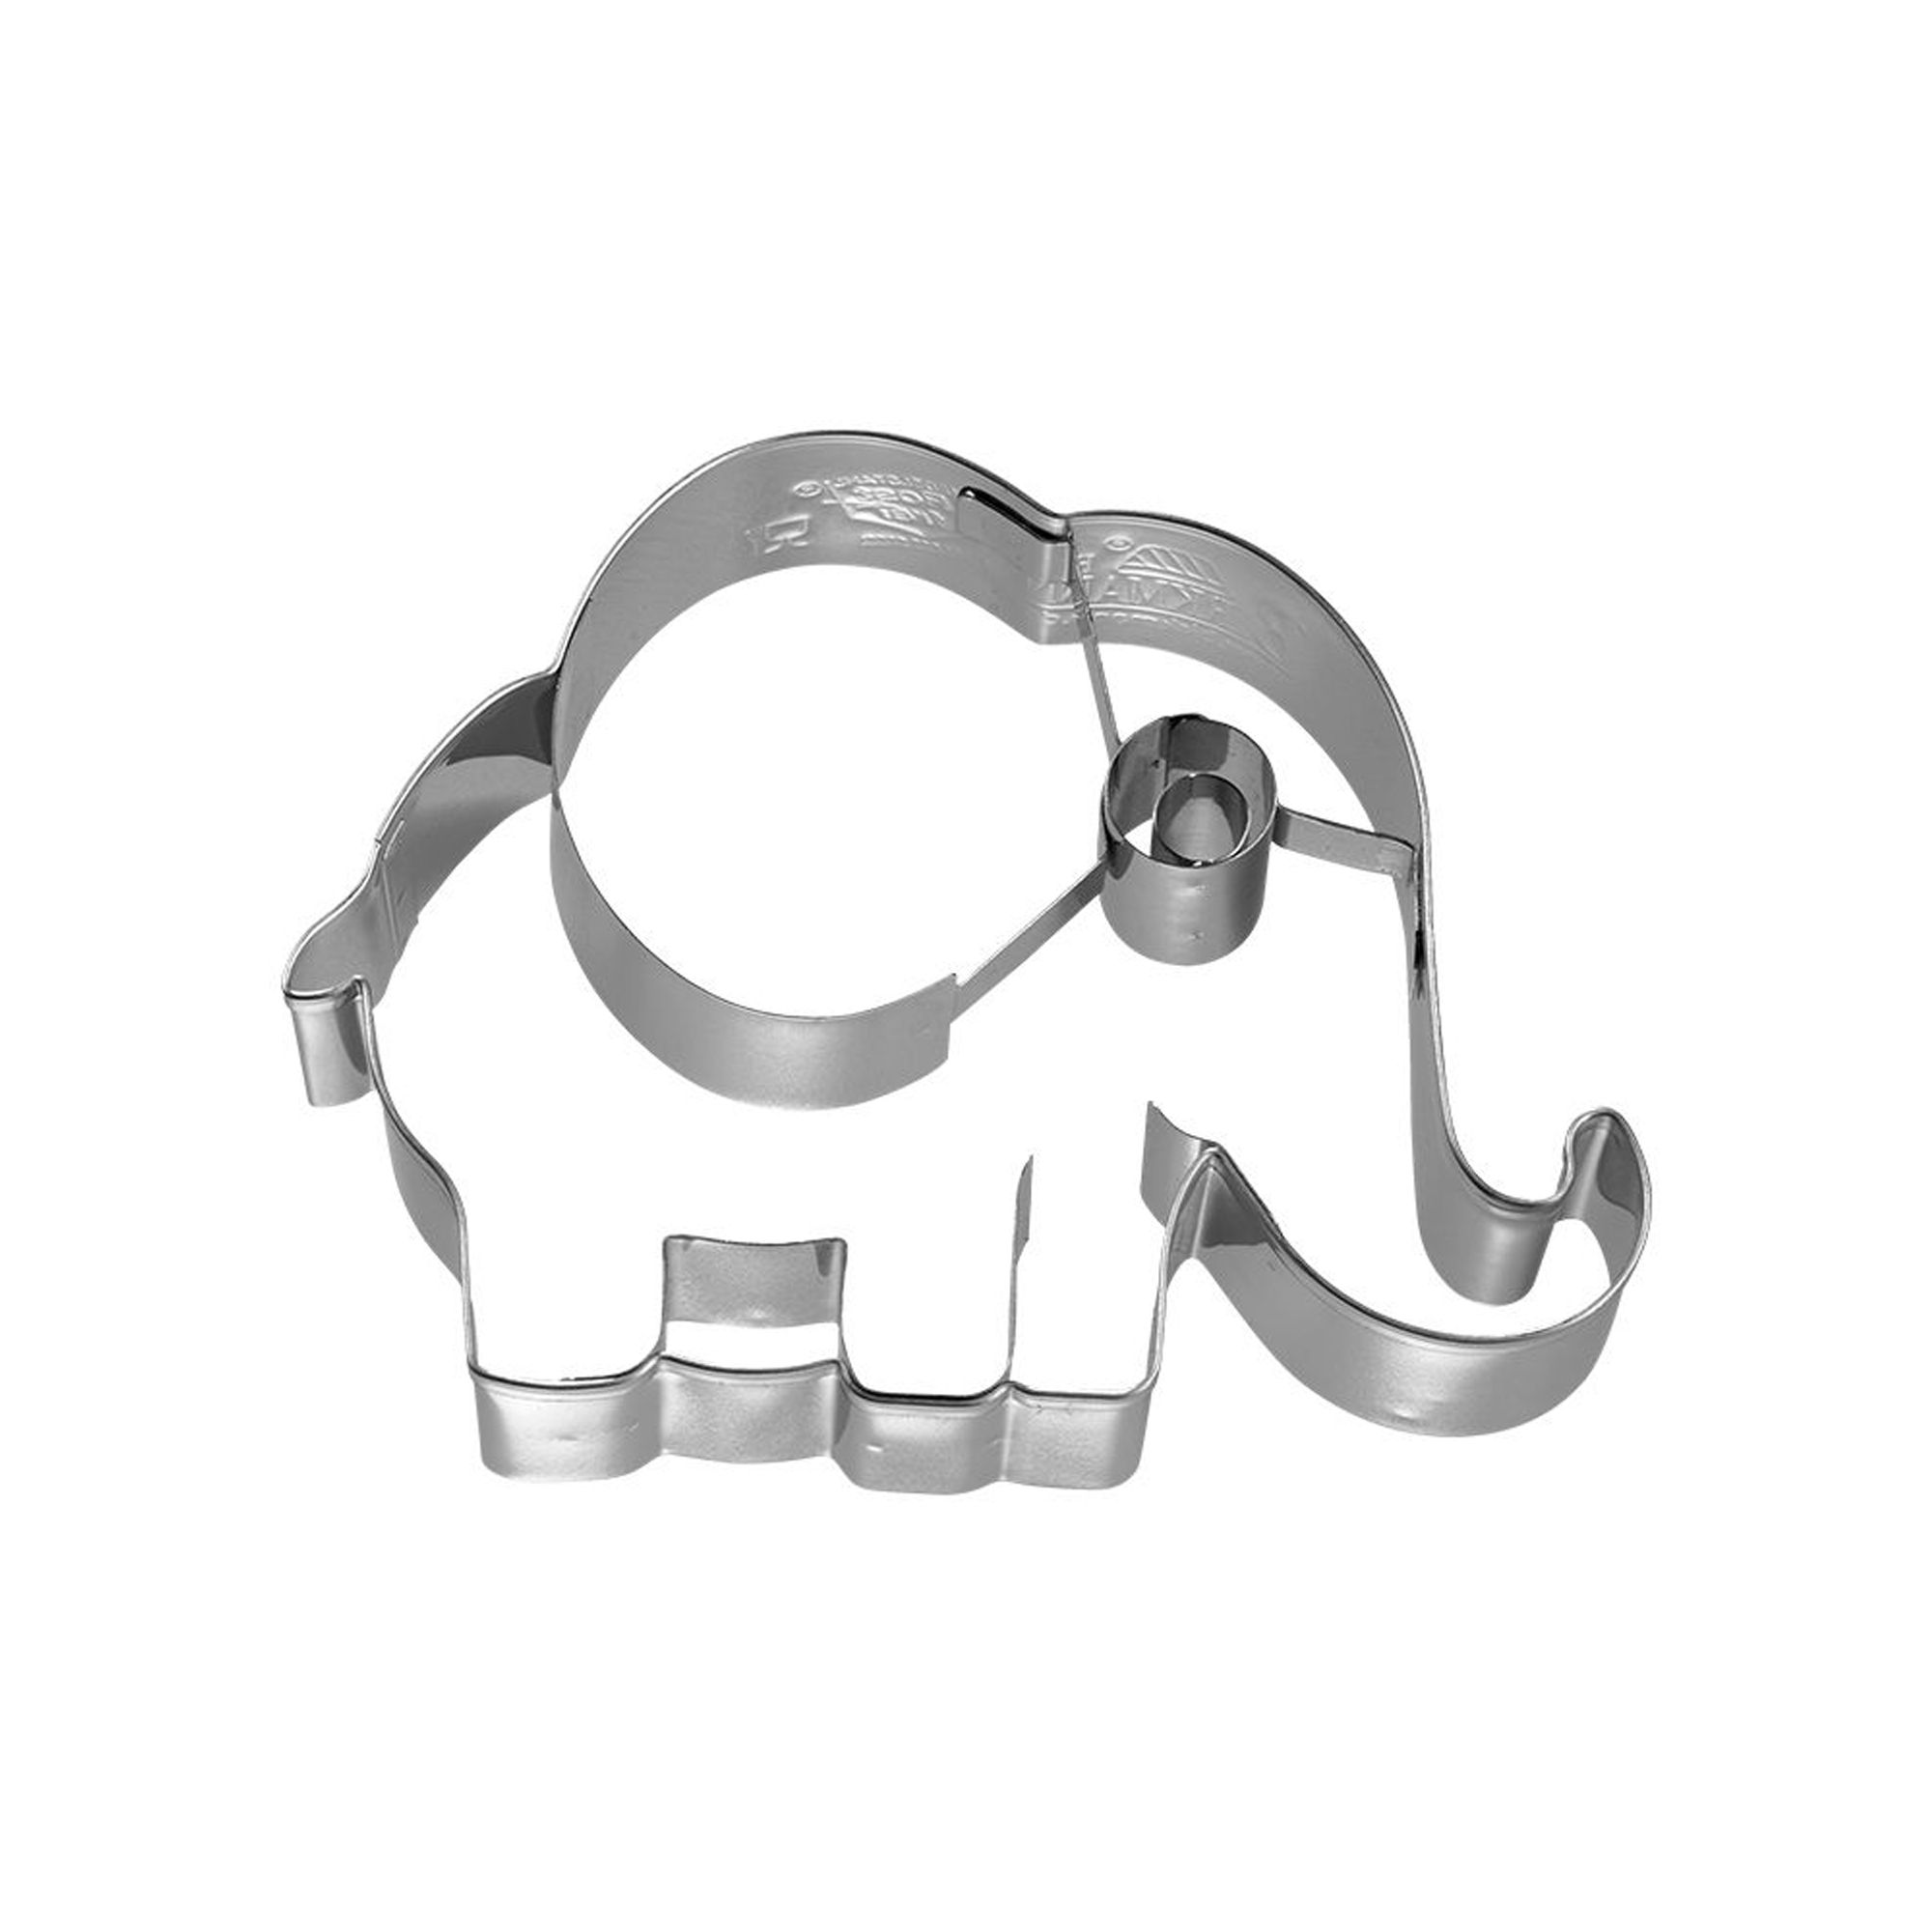 RBV Birkmann - Cookie Cutter elephant 10,5 cm